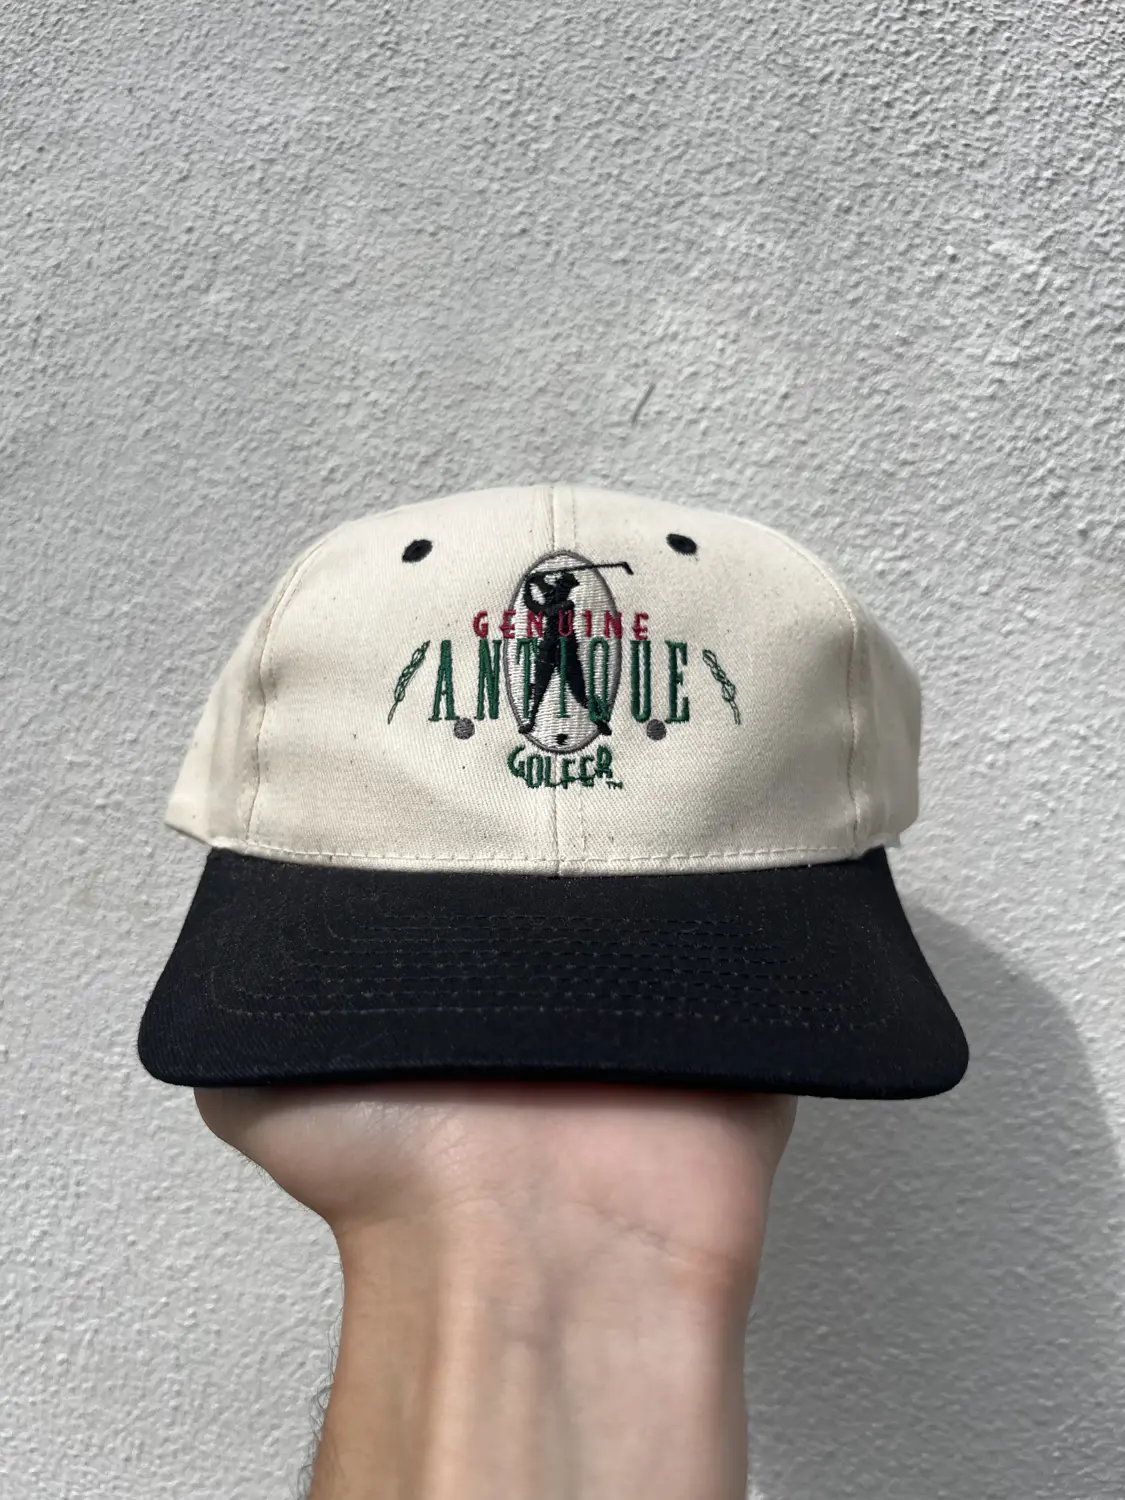 1993 Antique Golfer SnapBack Hat